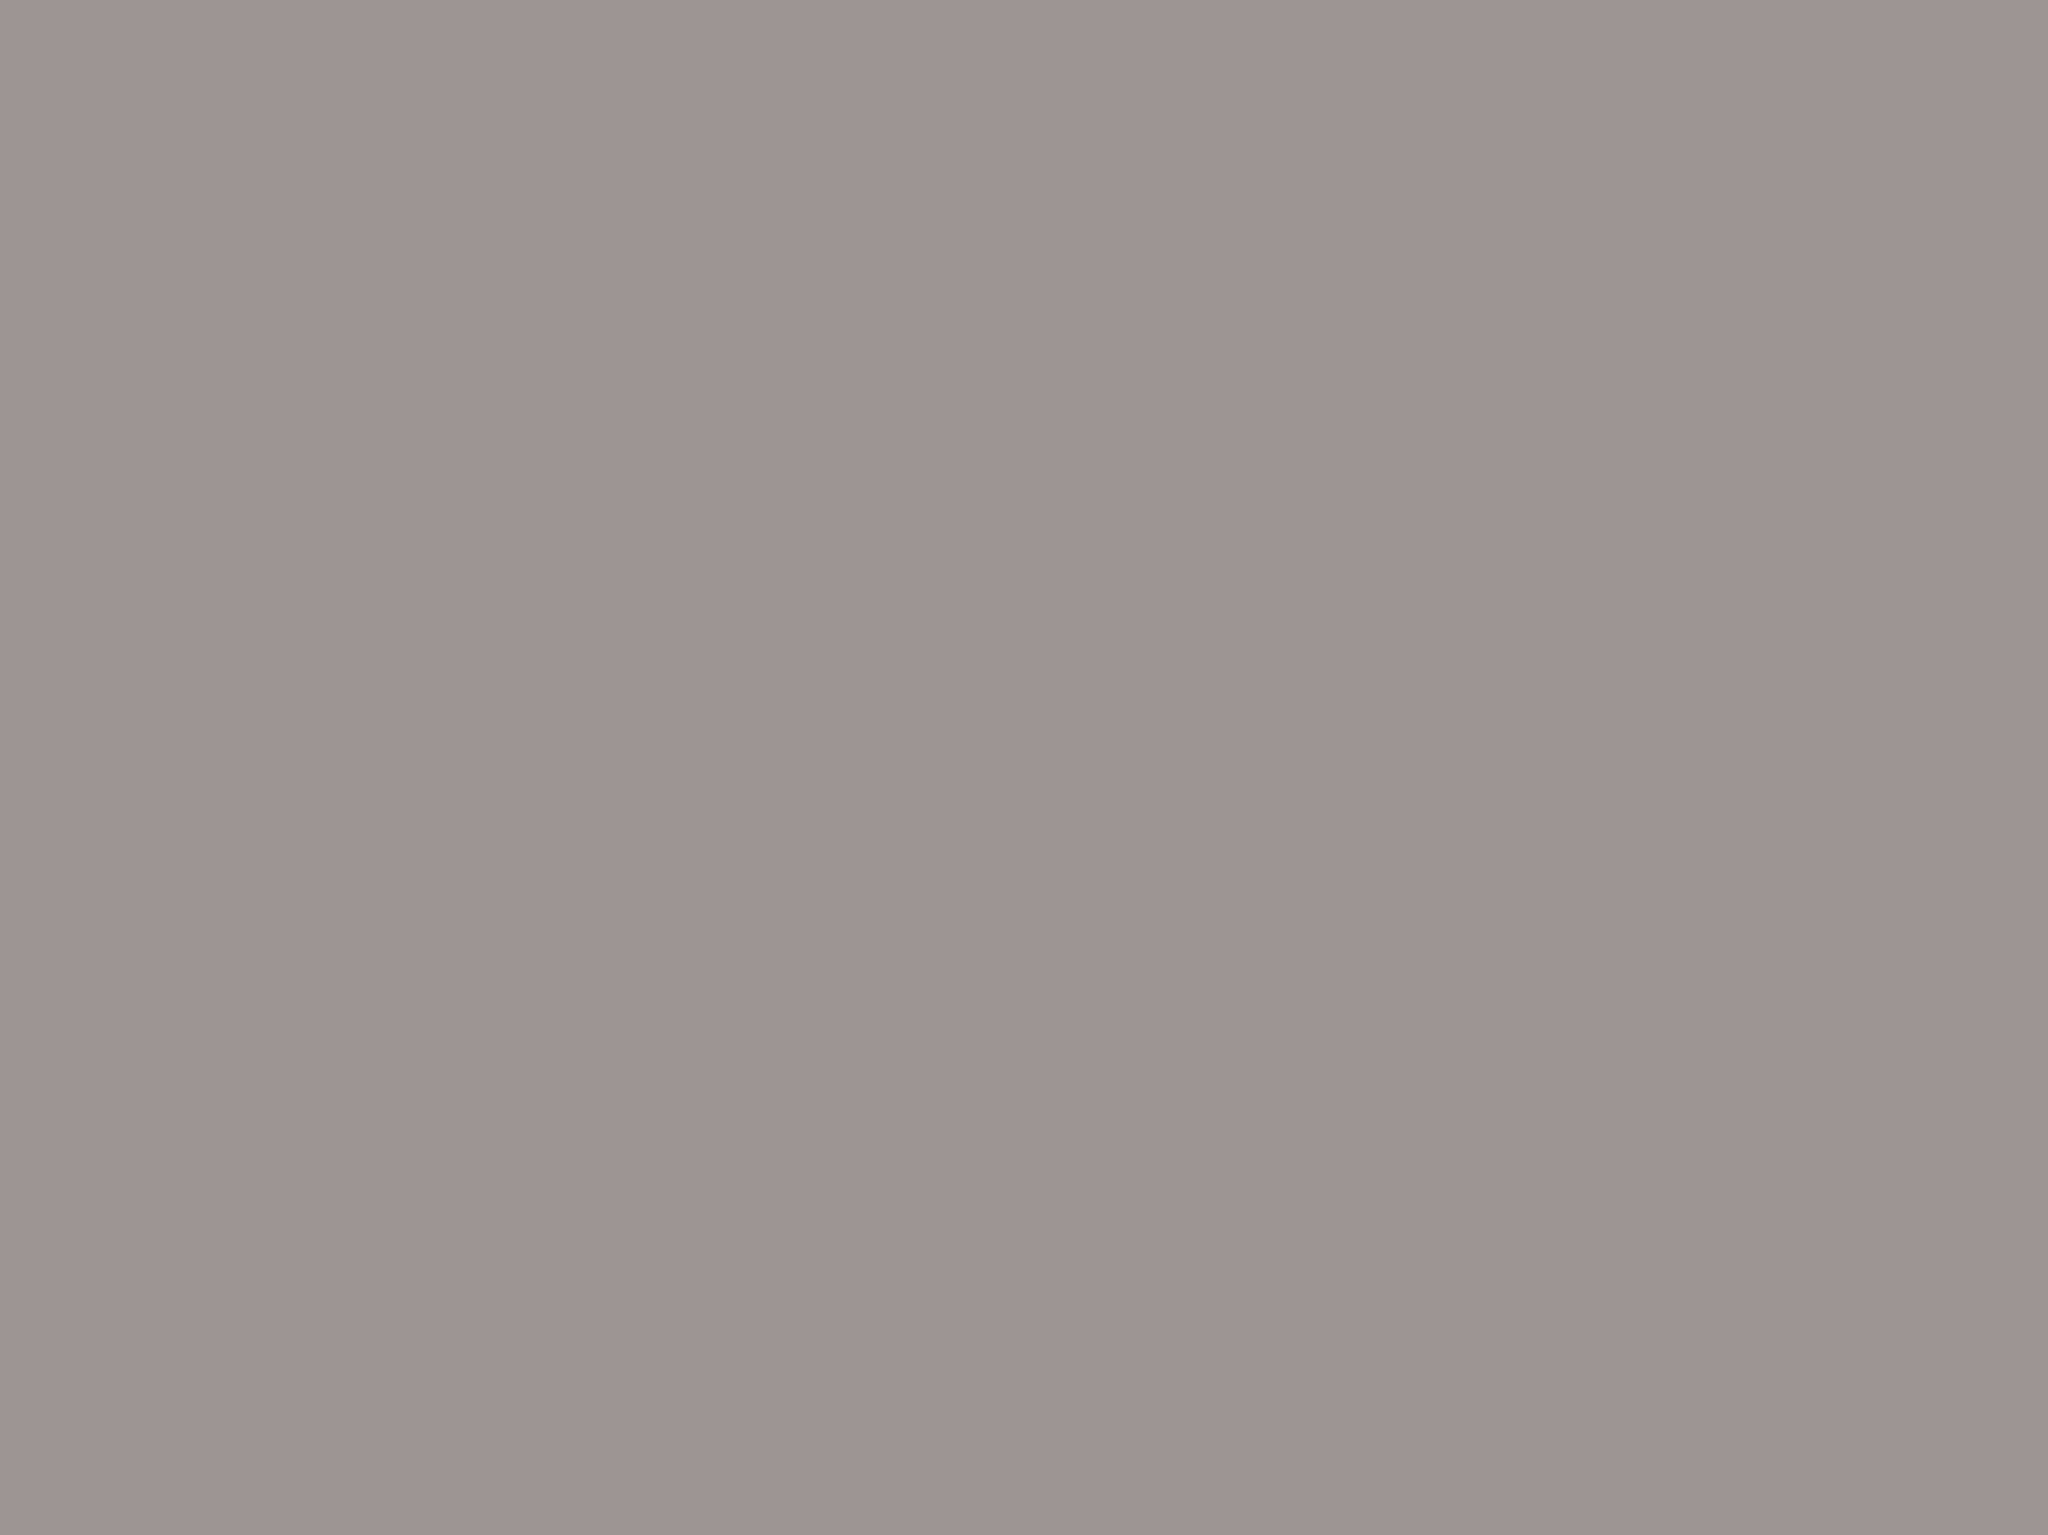 Наталья Гончарова. Лебедь (фрагмент). Часть триптиха «Сбор винограда». 1911–1912. Государственная Третьяковская галерея, Москва